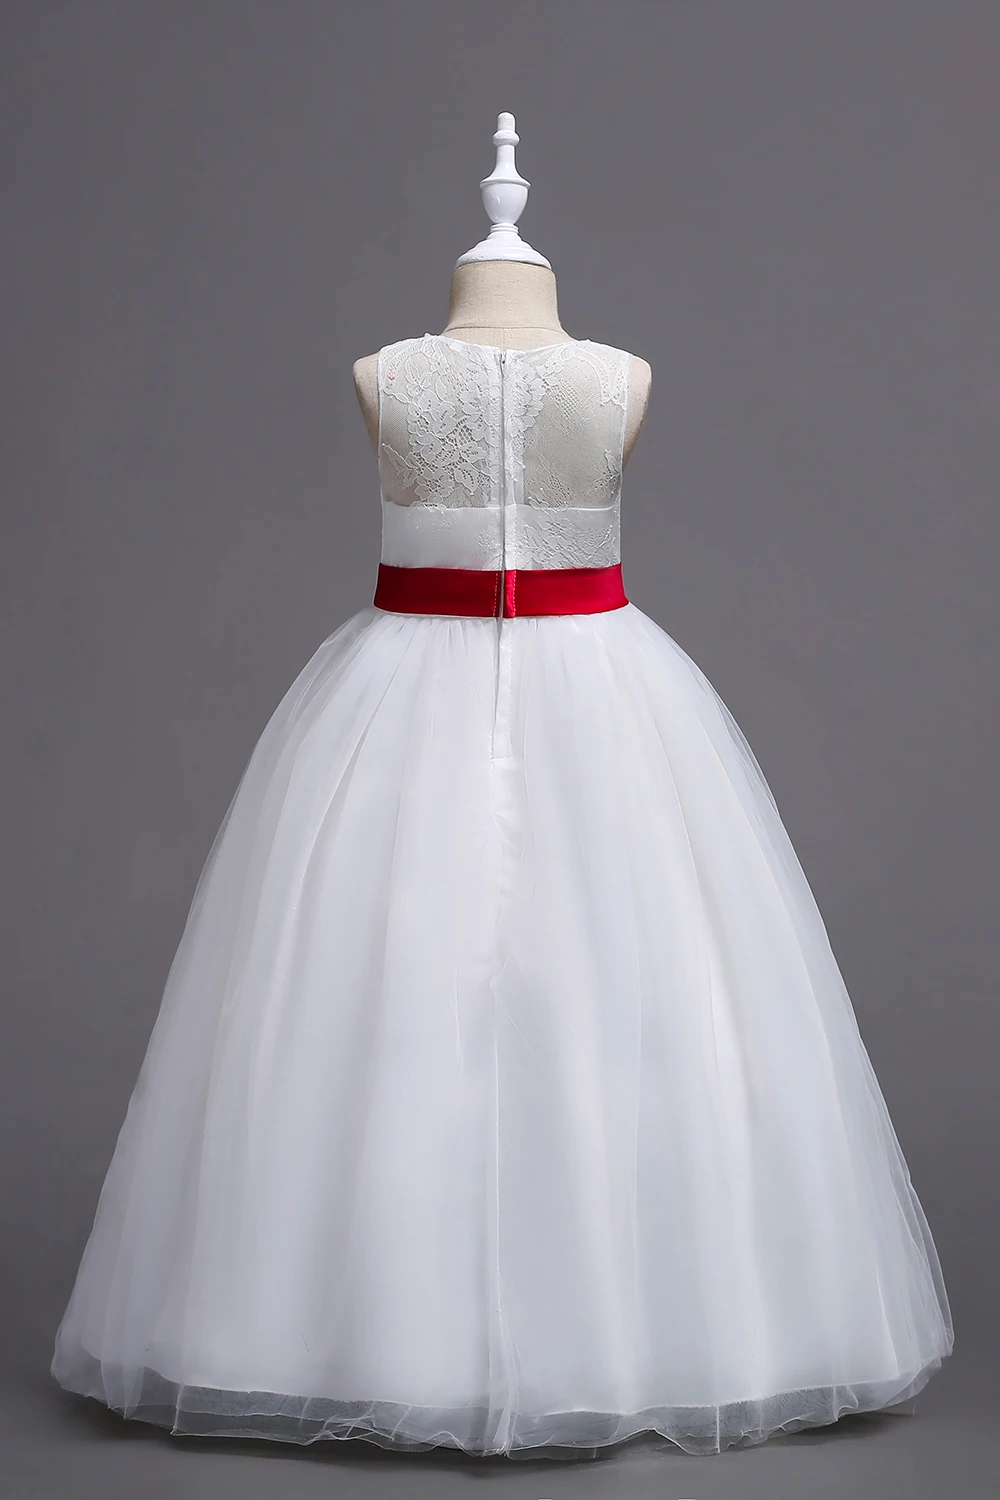 Белое платье с цветочным узором для девочек, кружевное бальное платье 2019 года, пышные платья для девочек с бантом, платья для первого